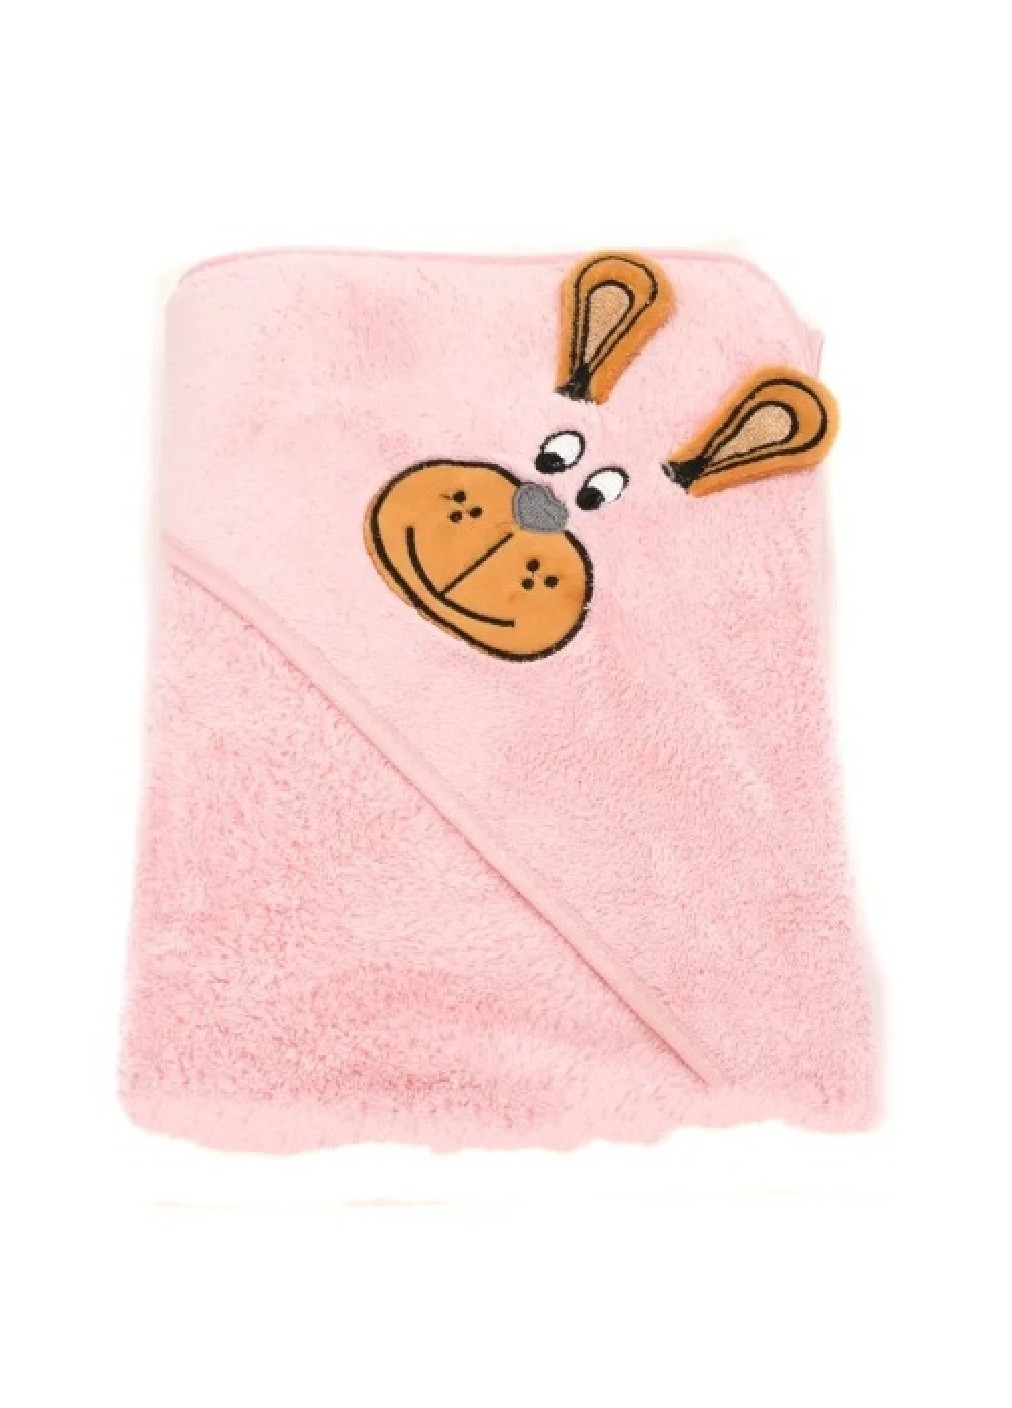 Unbranded полотенце с капюшоном пончо детское банное плед уголок конверт для купания 90х90 см (473223-prob) розовый однотонный розовый производство -